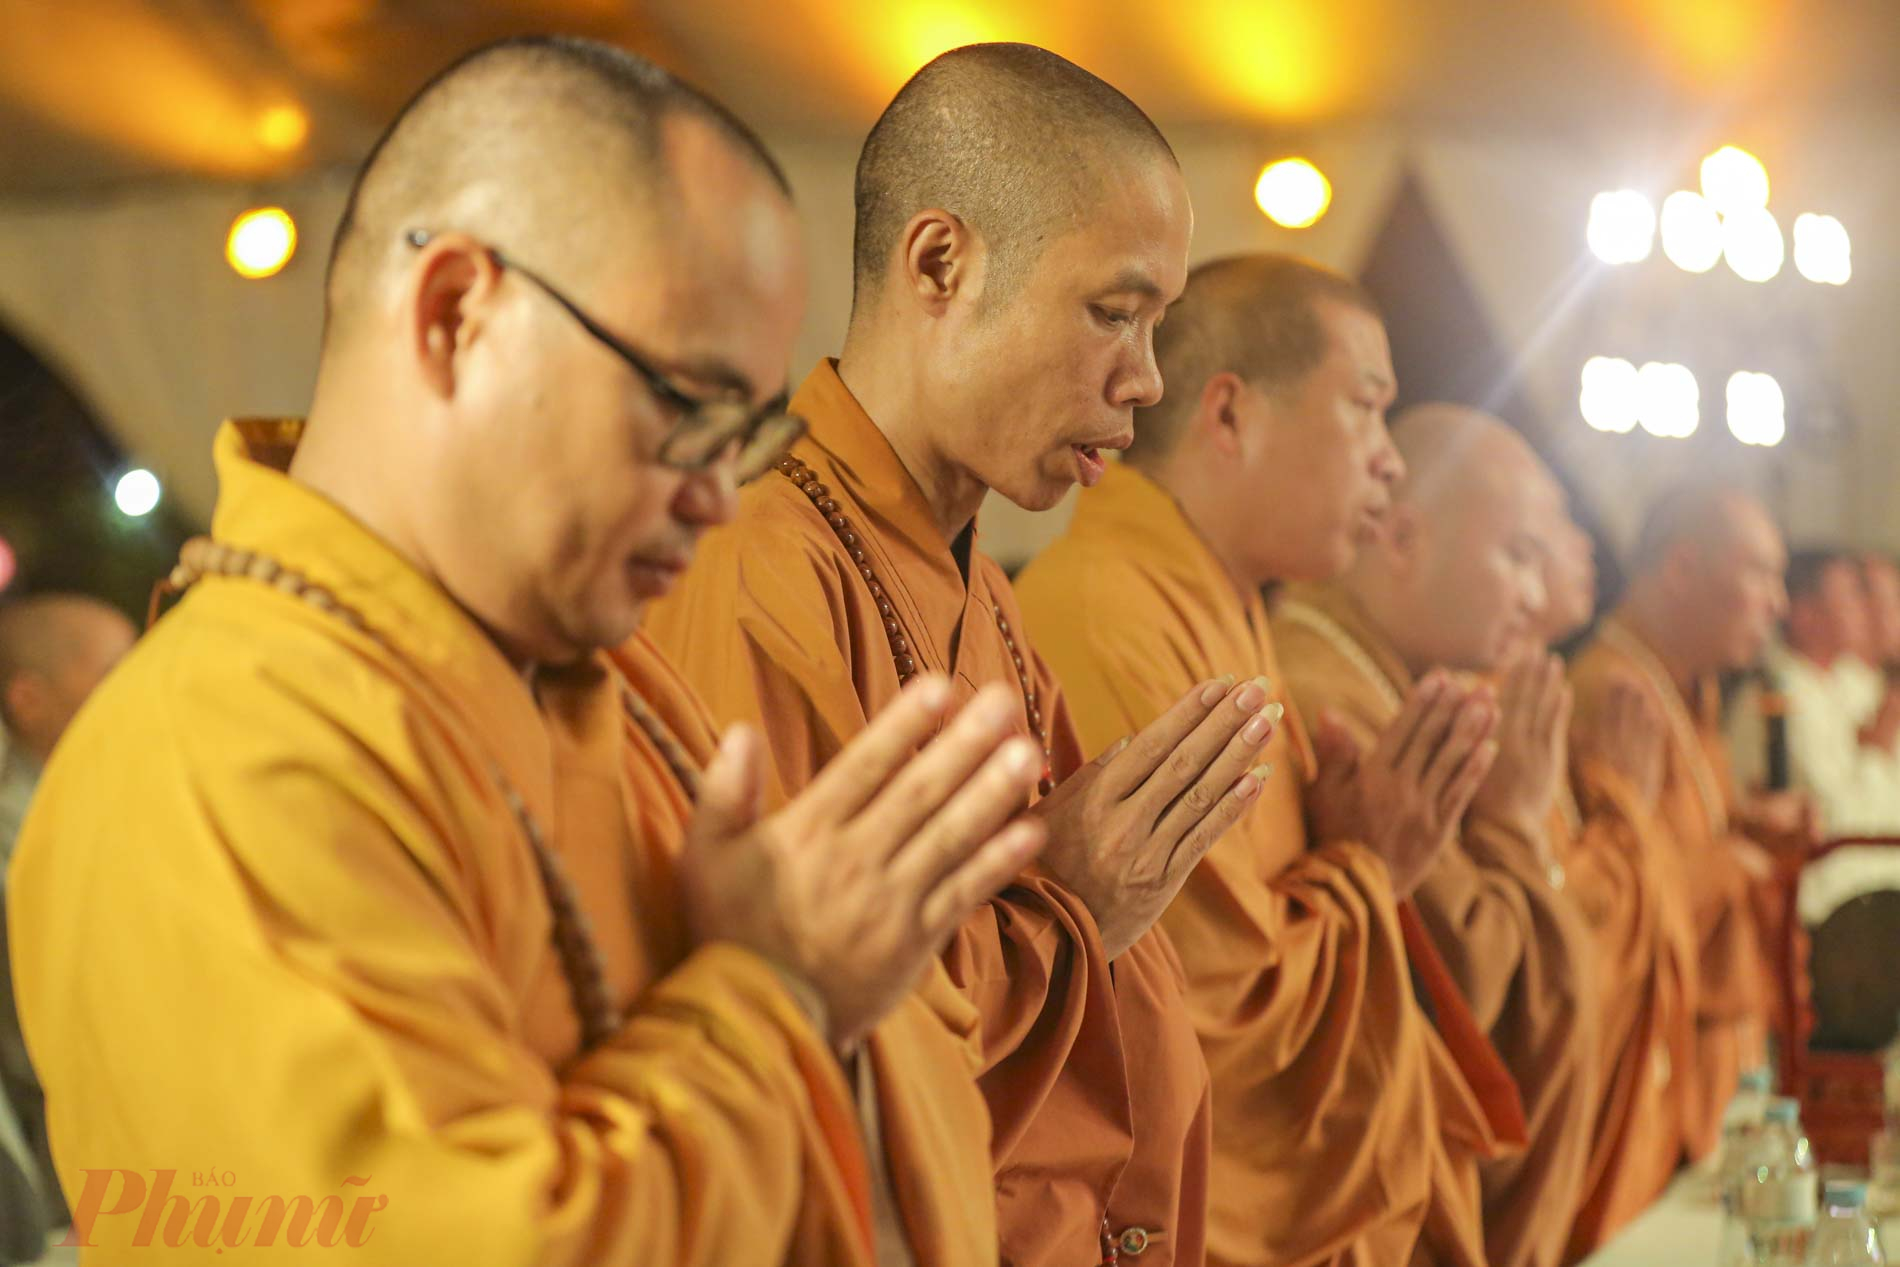 Những câu chuyện, những tâm sự, bài học về sự hi sinh của mẹ cha dành cho con cái được các Phật tử tại chùa Kim Sơn Lạc Hồng truyền tải đến hàng nghìn người trong buổi lễ